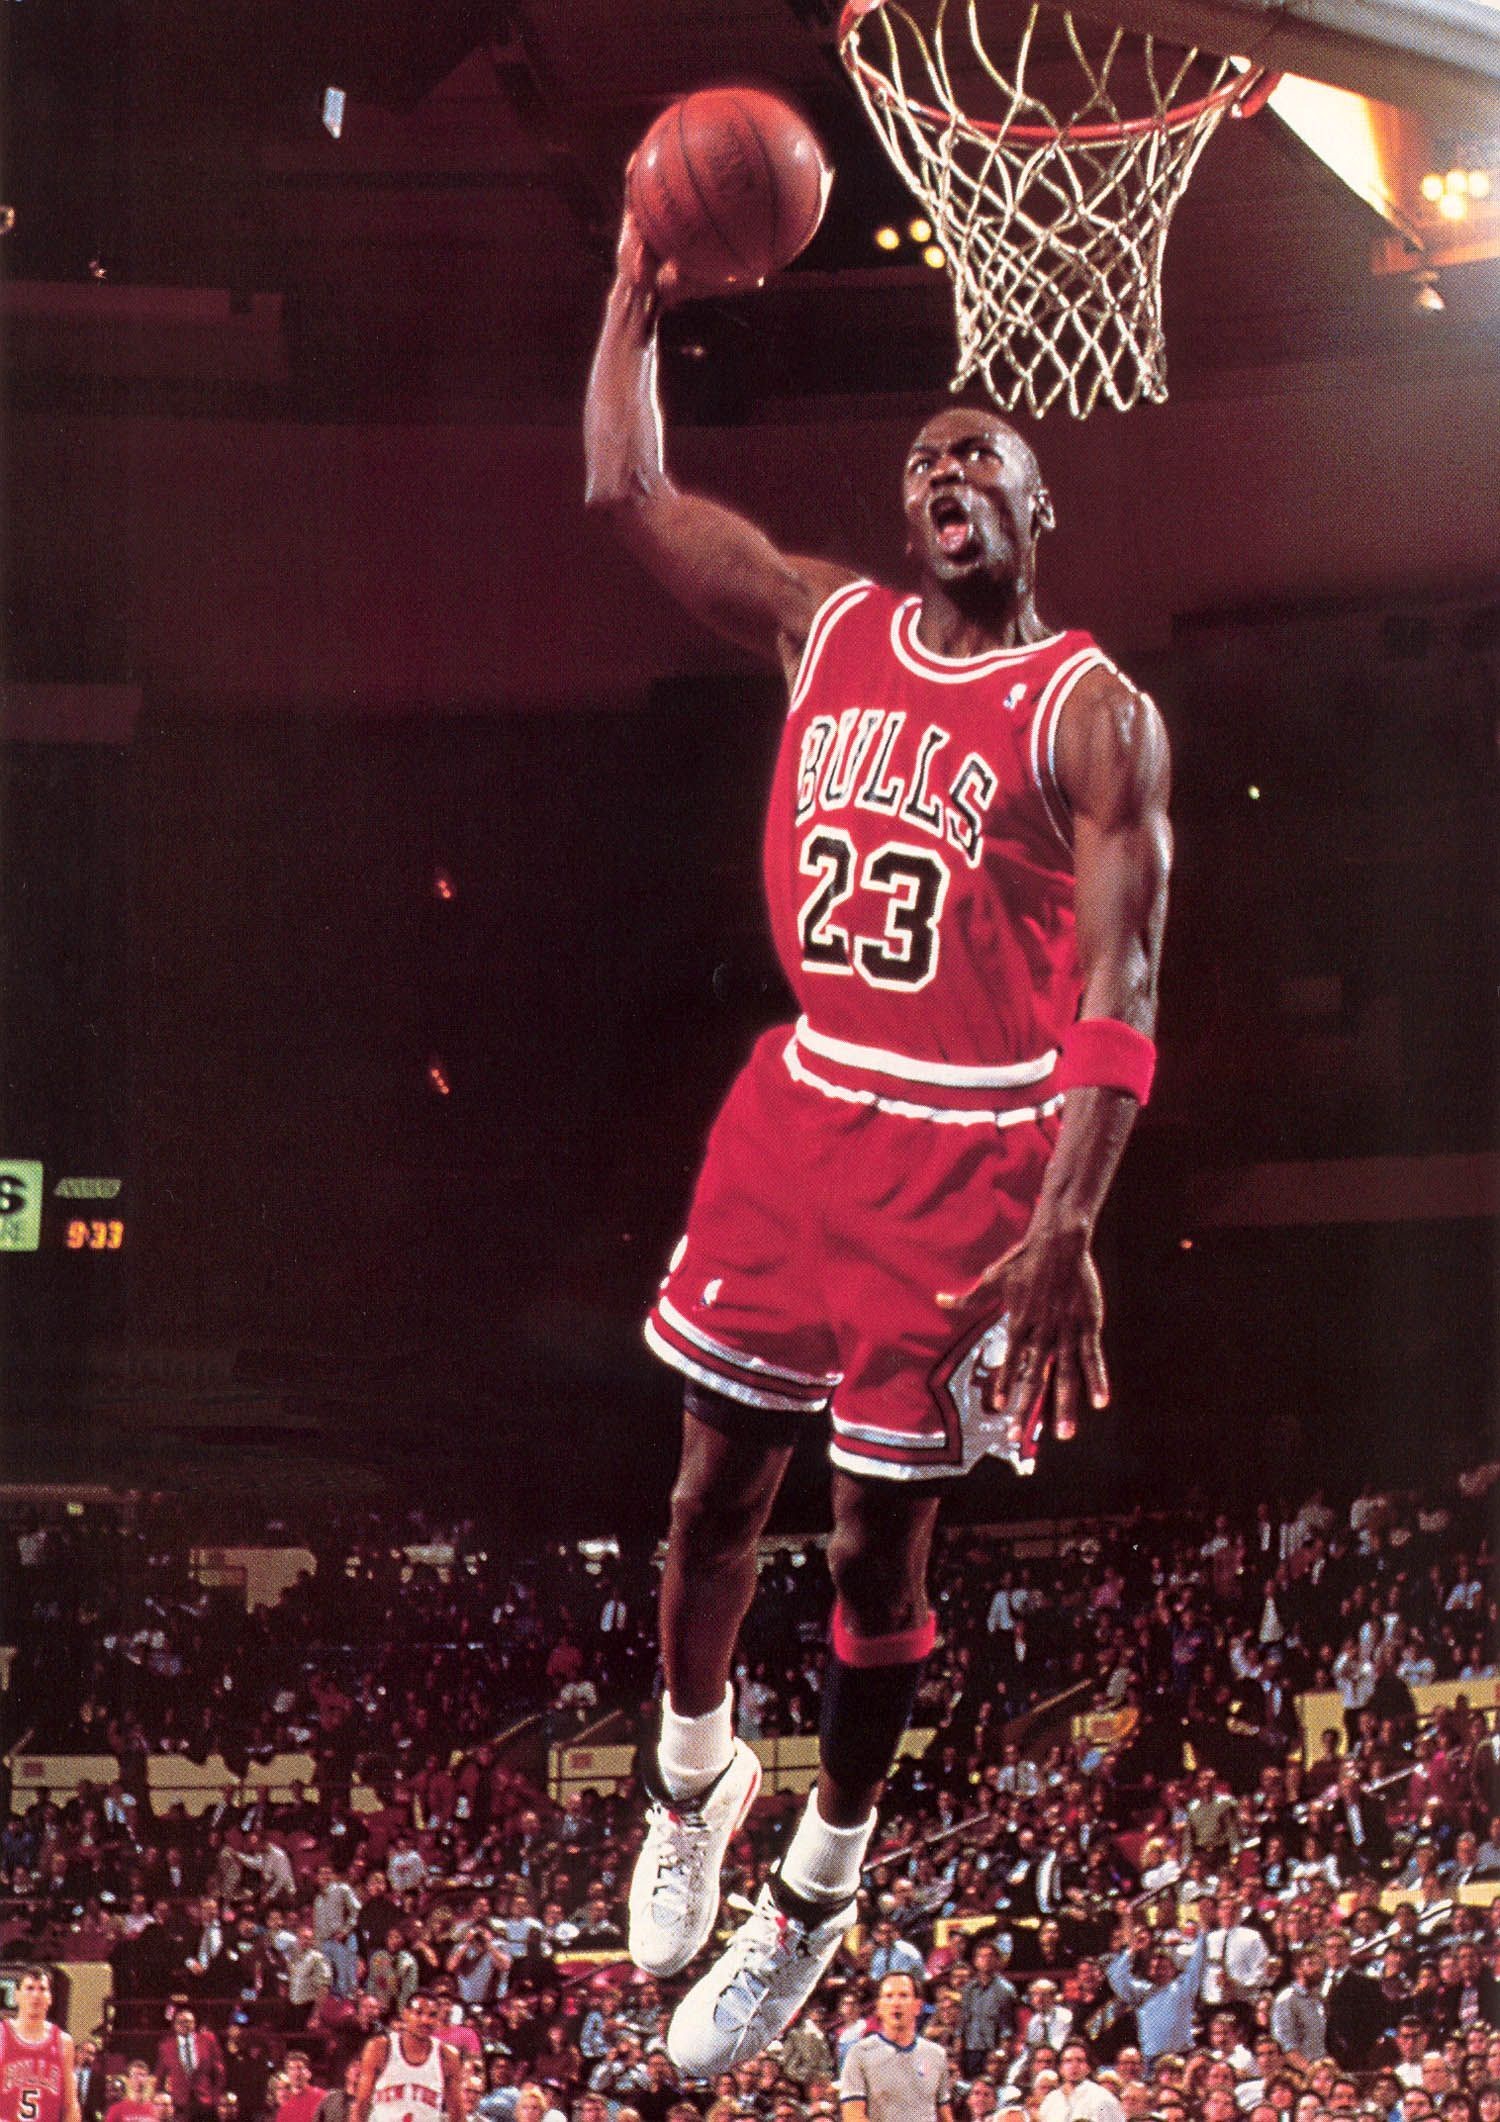 Download Best Basketball Michael Jordan Dunk Art Wallpaper